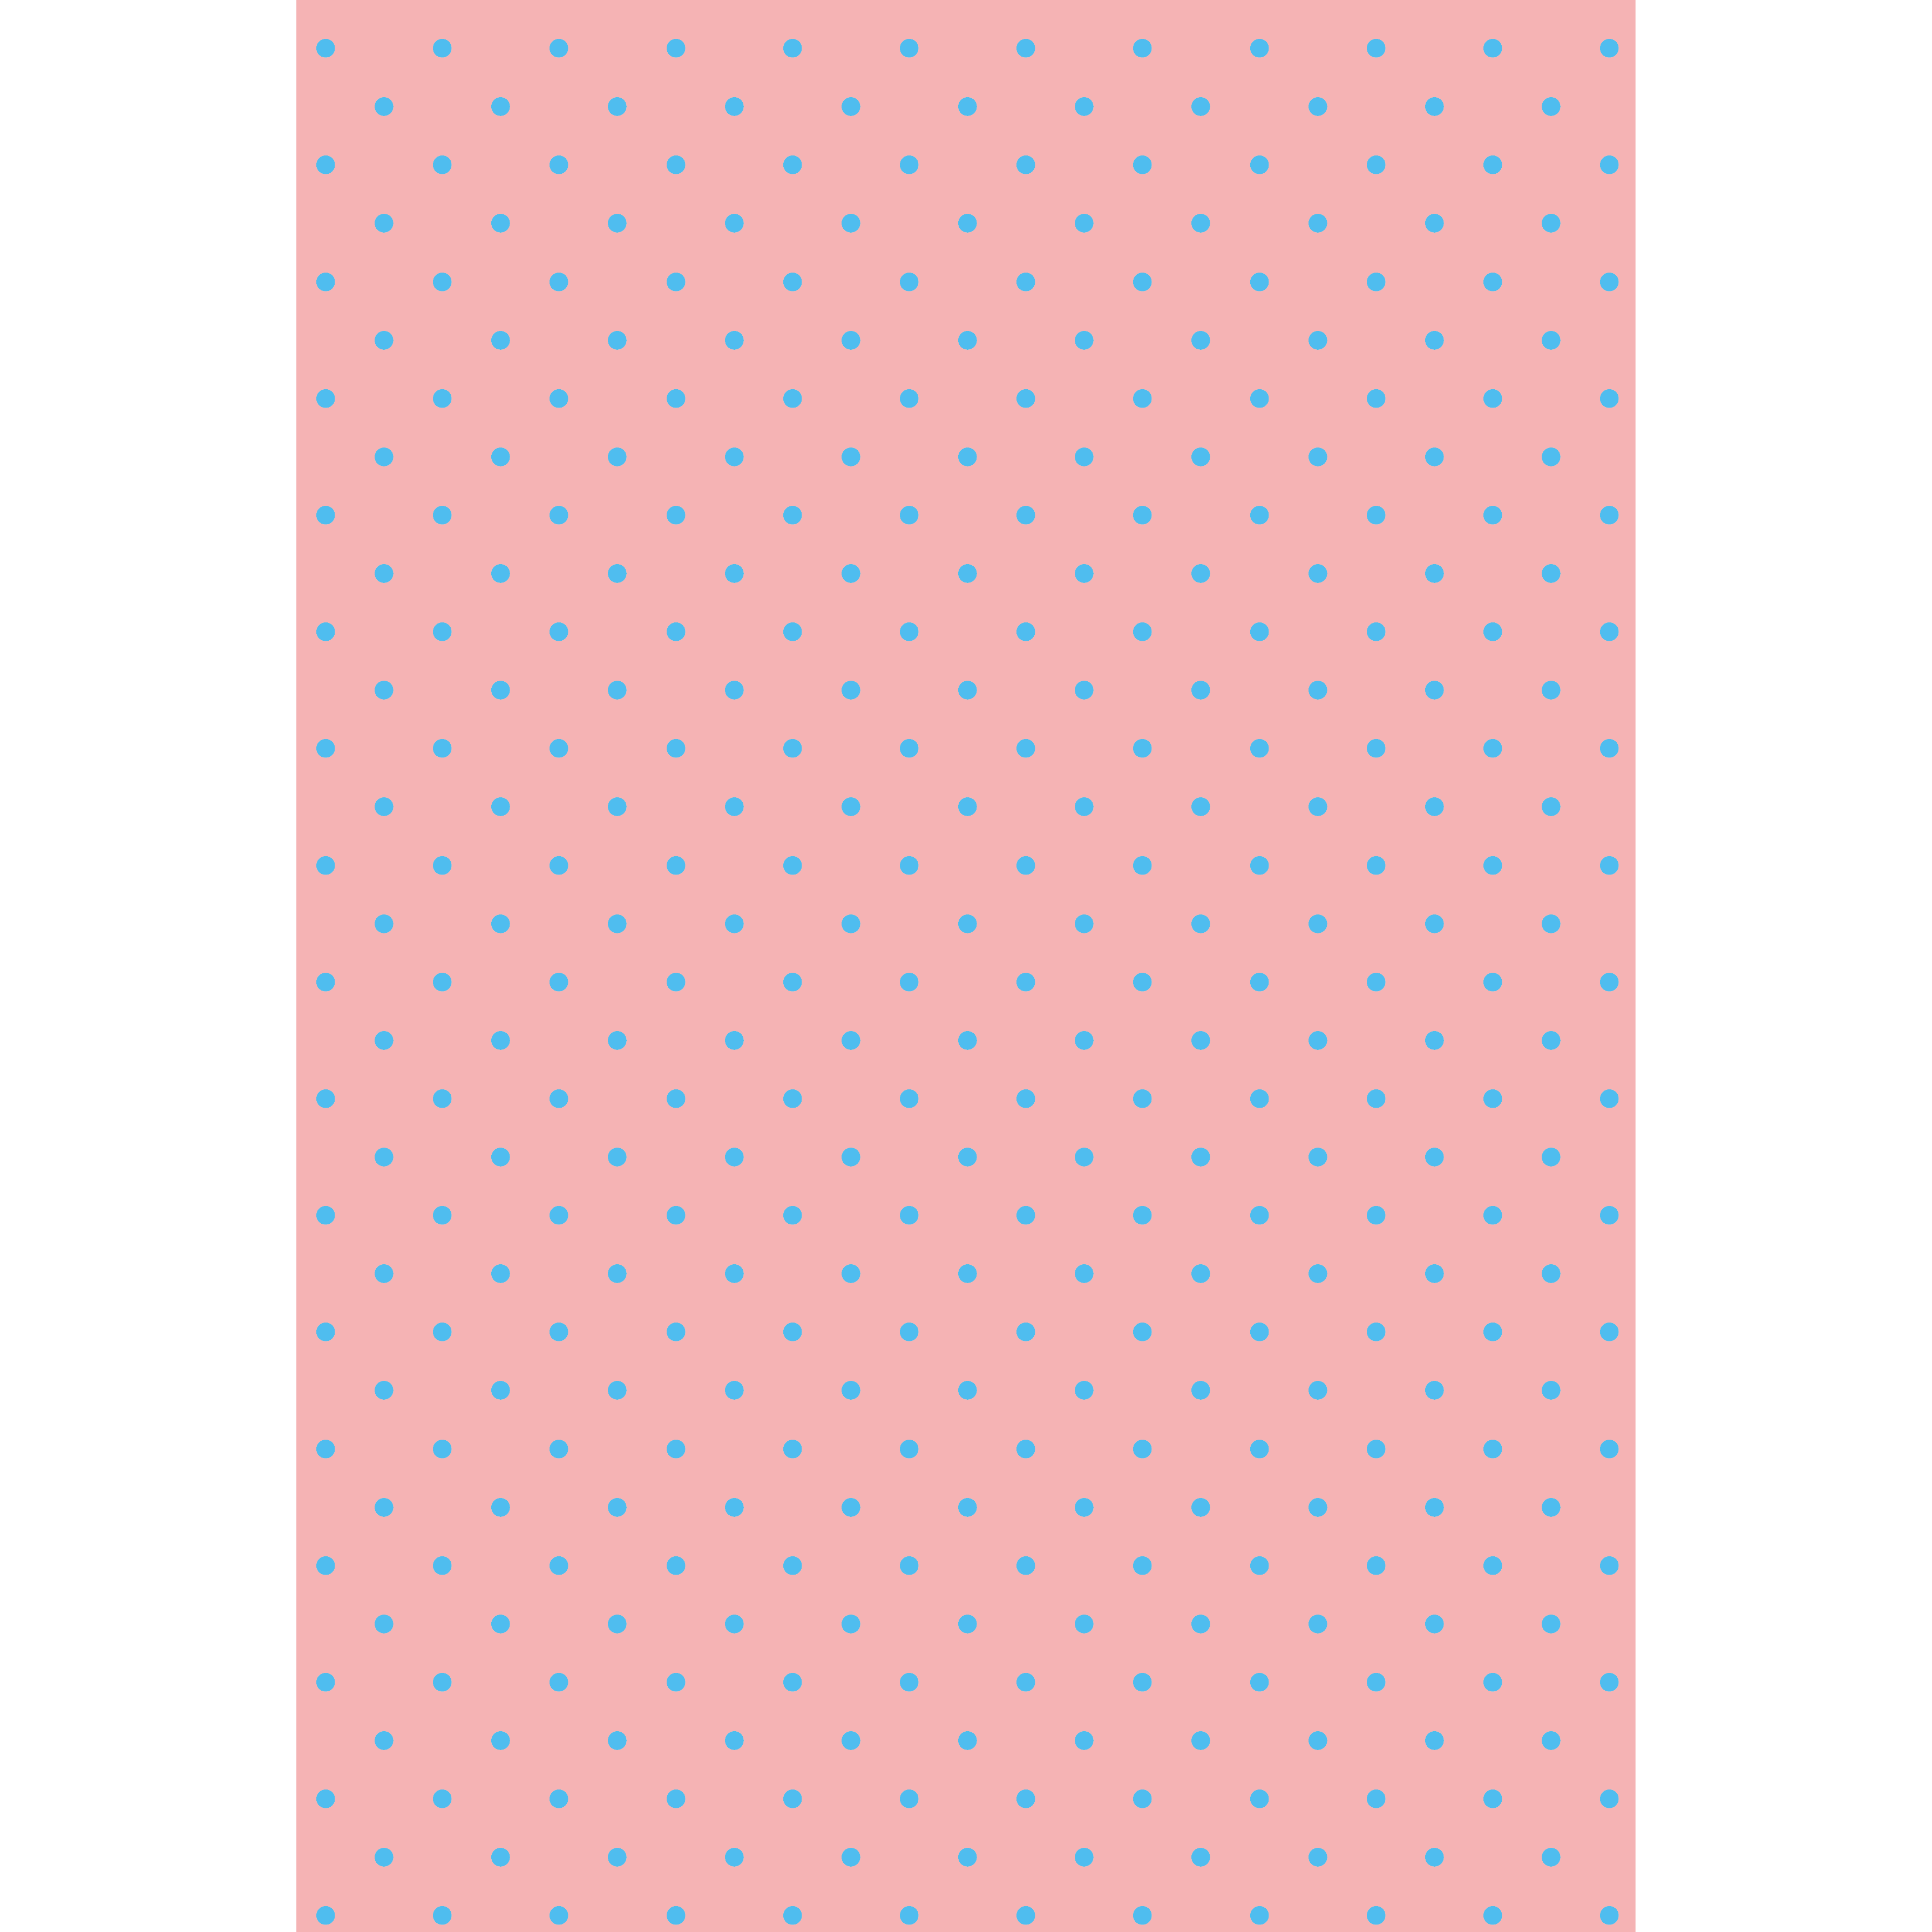 水玉 ドット ピンク スカイブルー 背景デザイン イラスト 商用フリー 無料 のイラスト素材なら イラストマンション